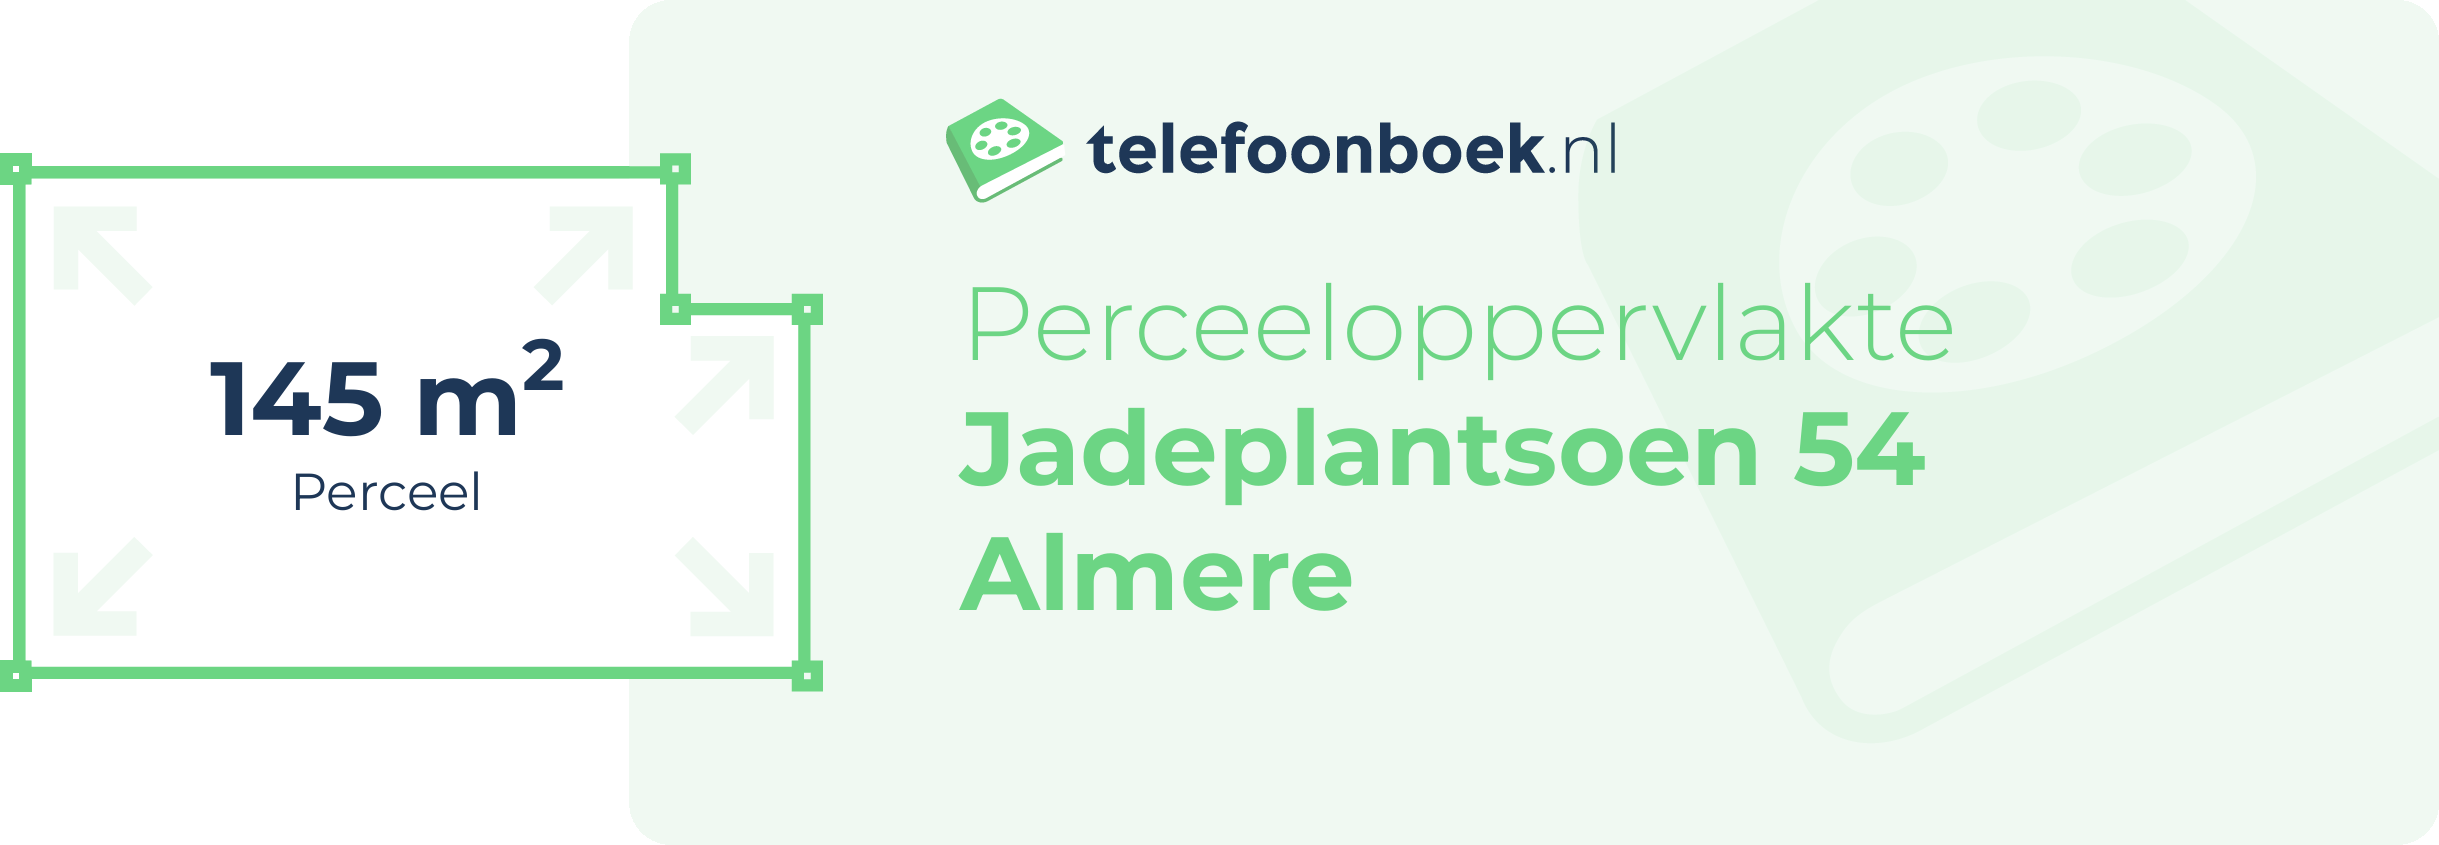 Perceeloppervlakte Jadeplantsoen 54 Almere